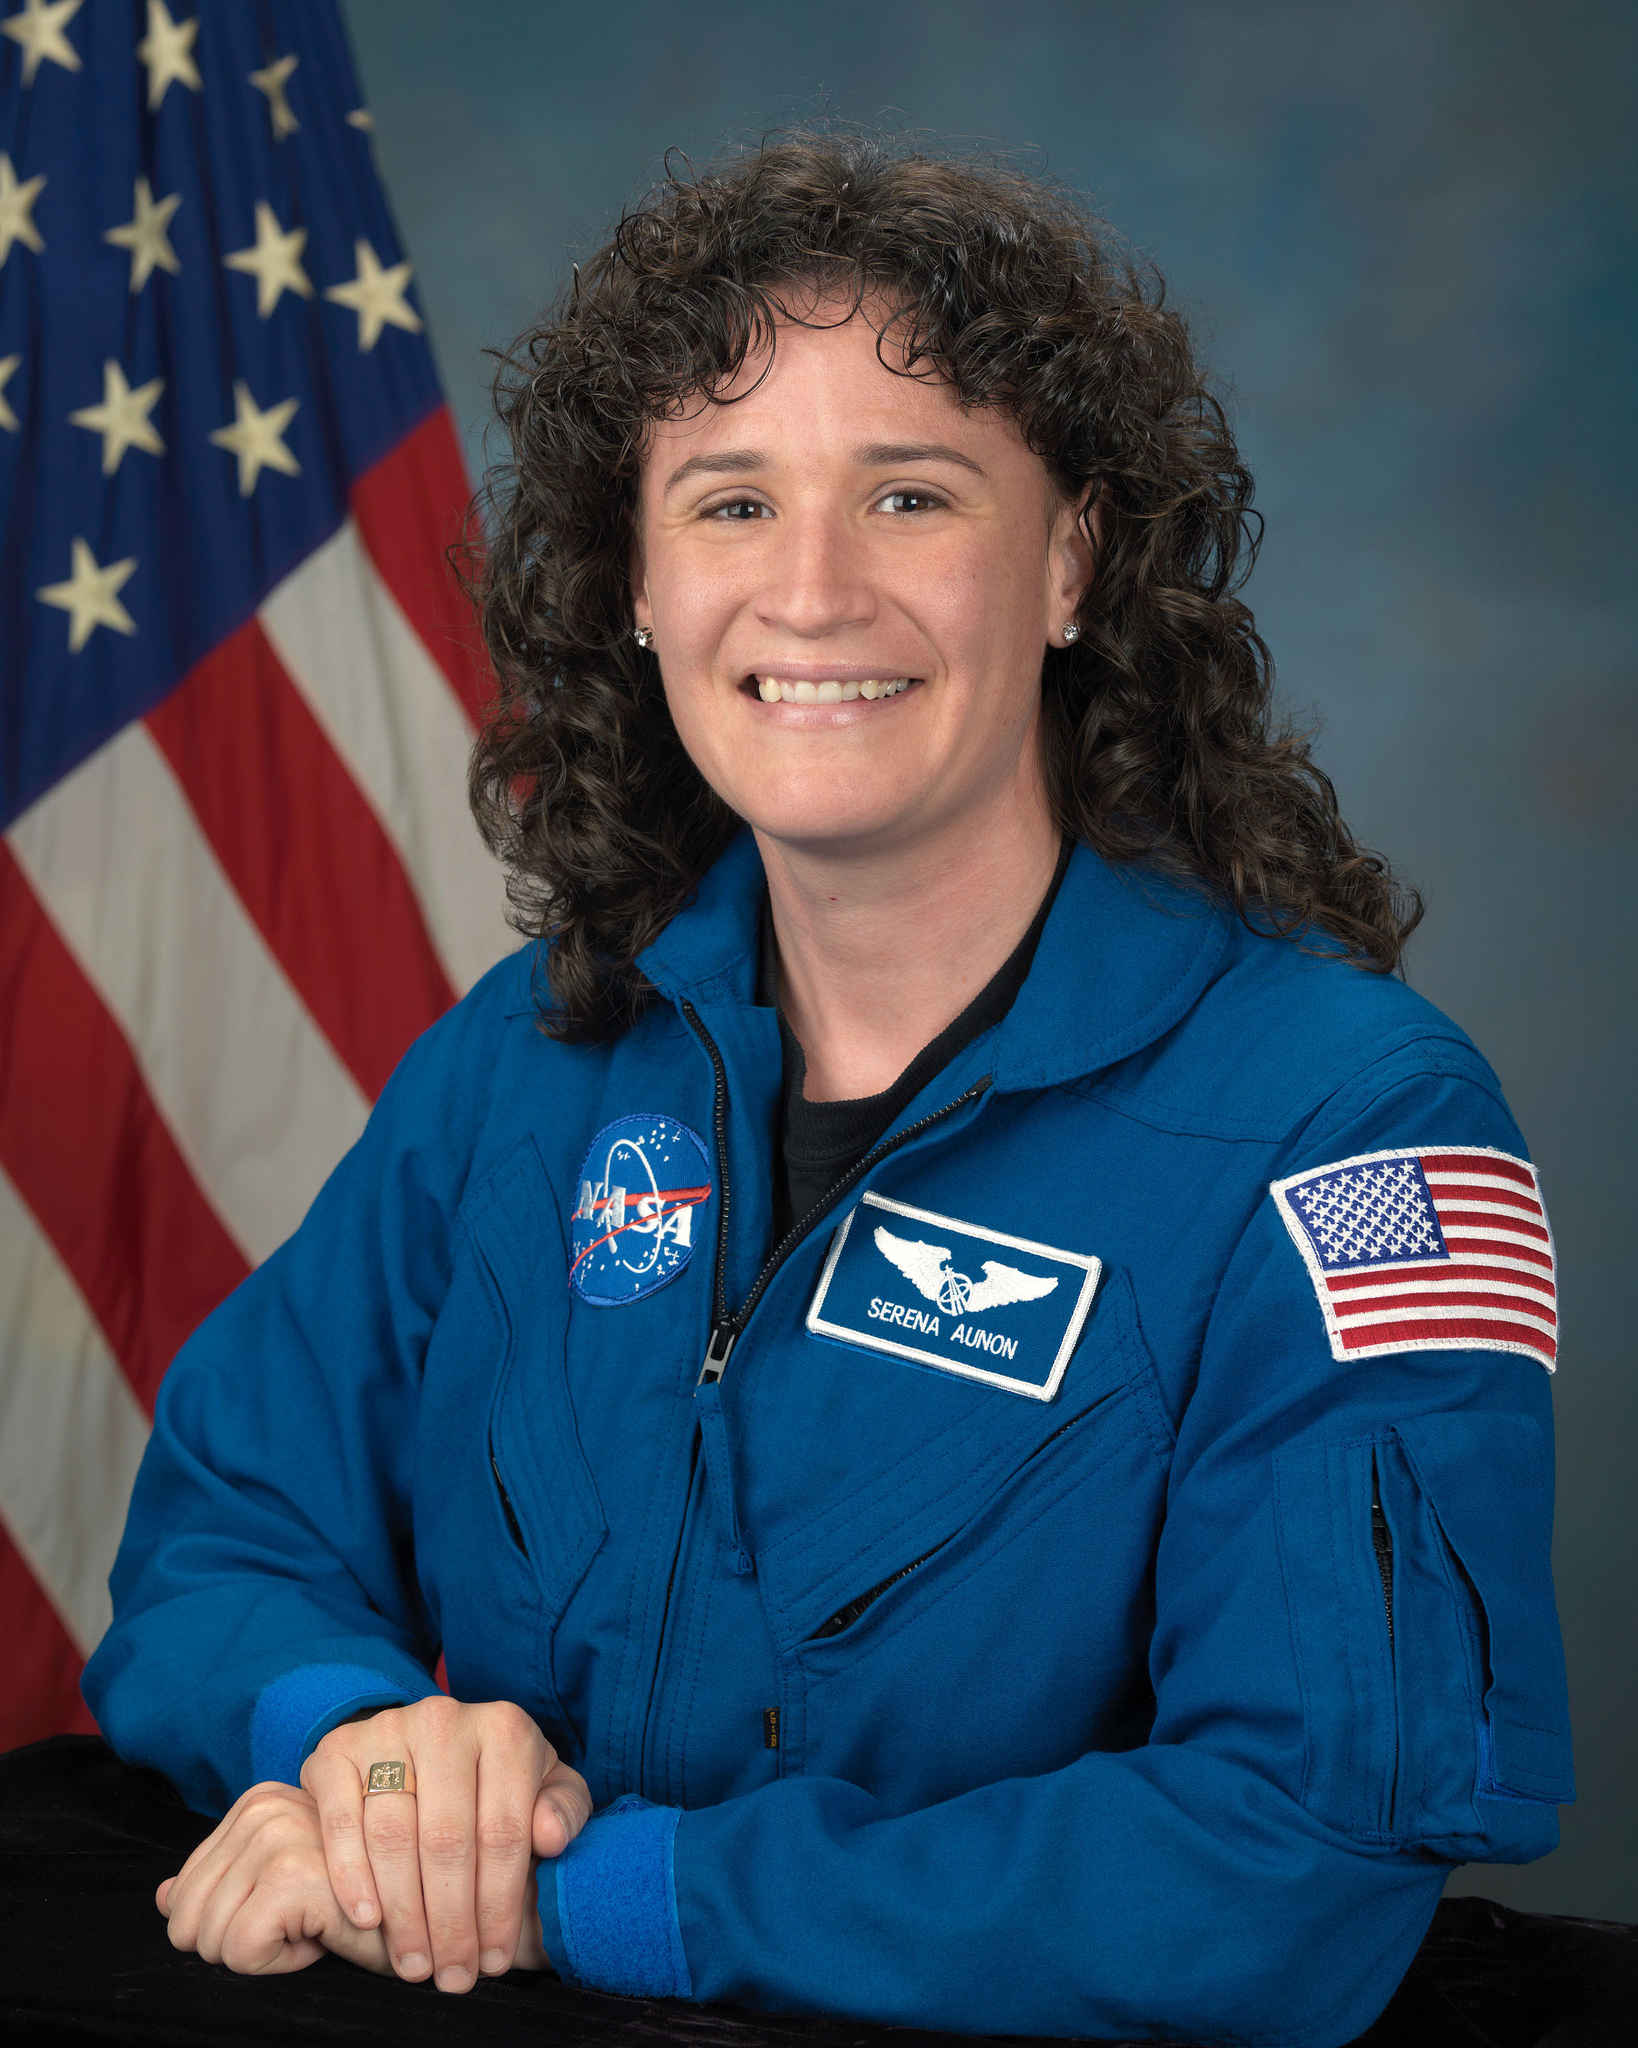 Official portrait of NASA astronaut Serena Auñón-Chancellor